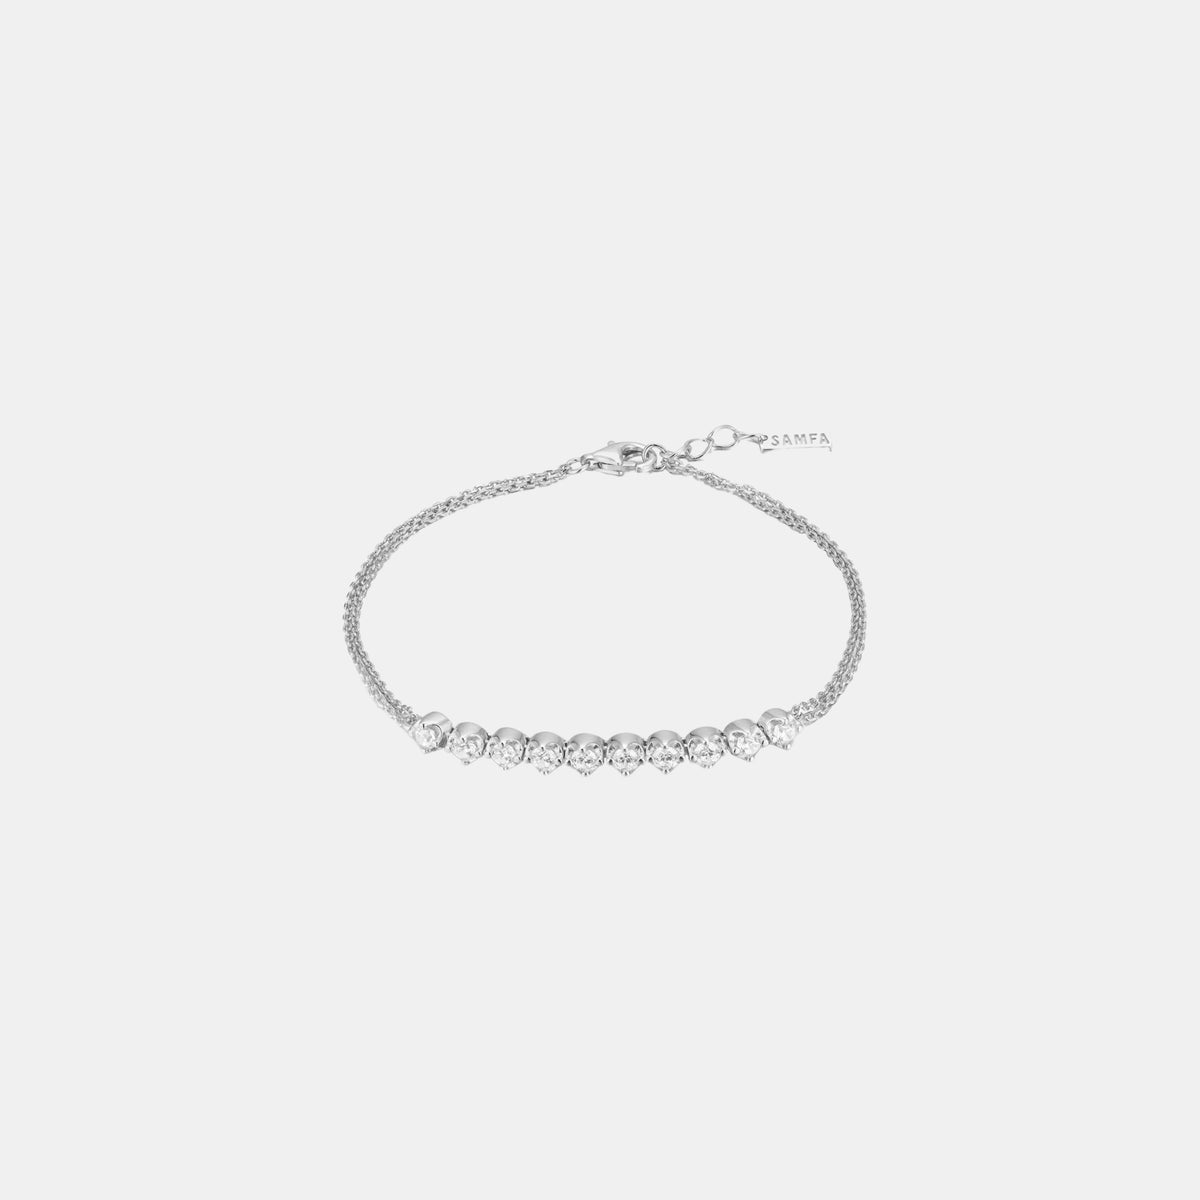 Samfa Style Bezel Double Chain Diamond Bracelet in Silver